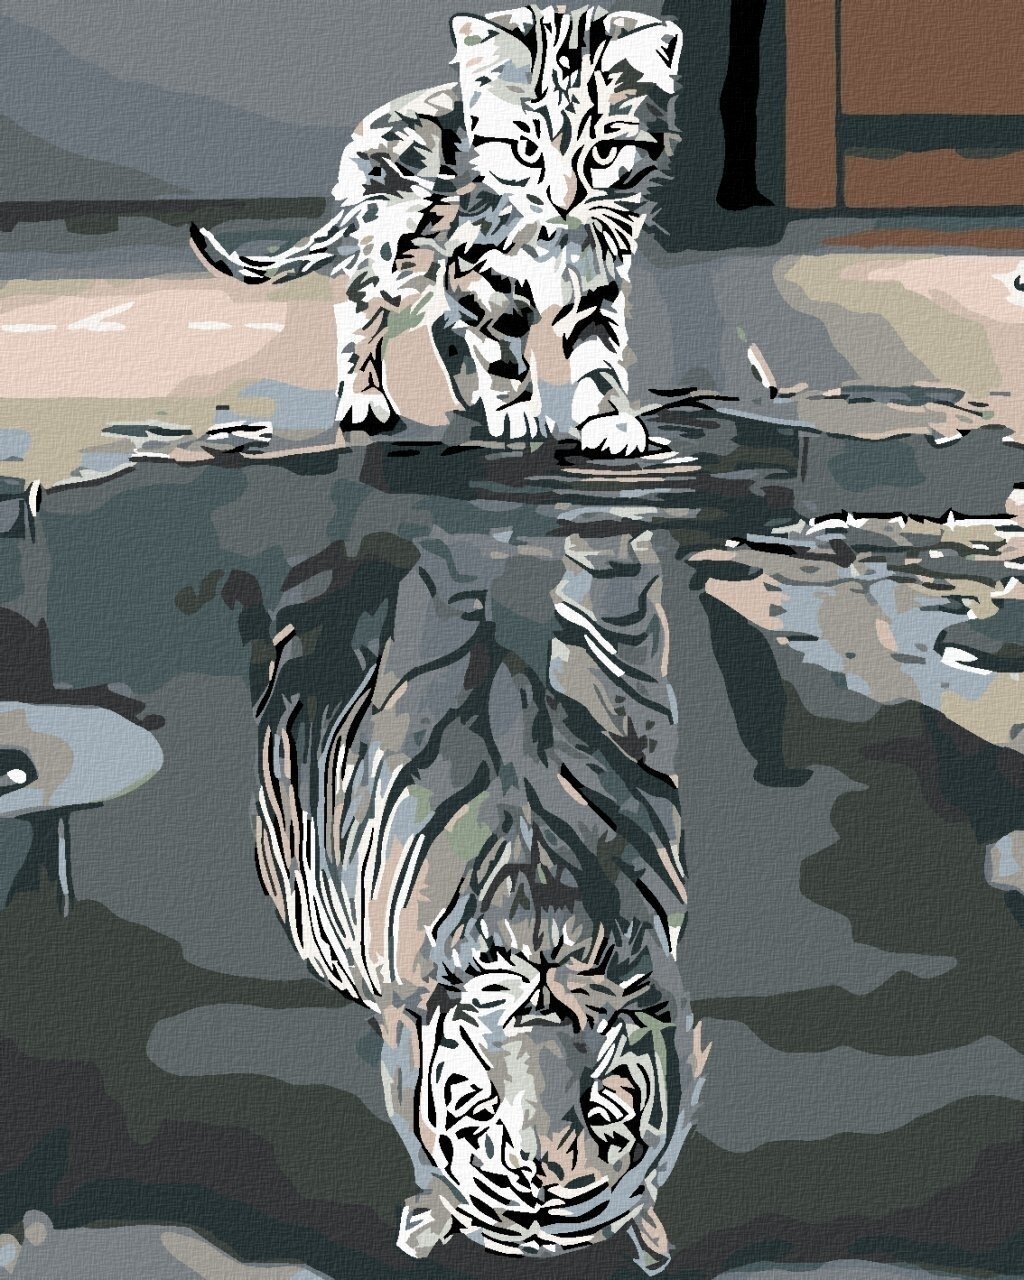 Pittura diamante Zuty Gattino o tigre